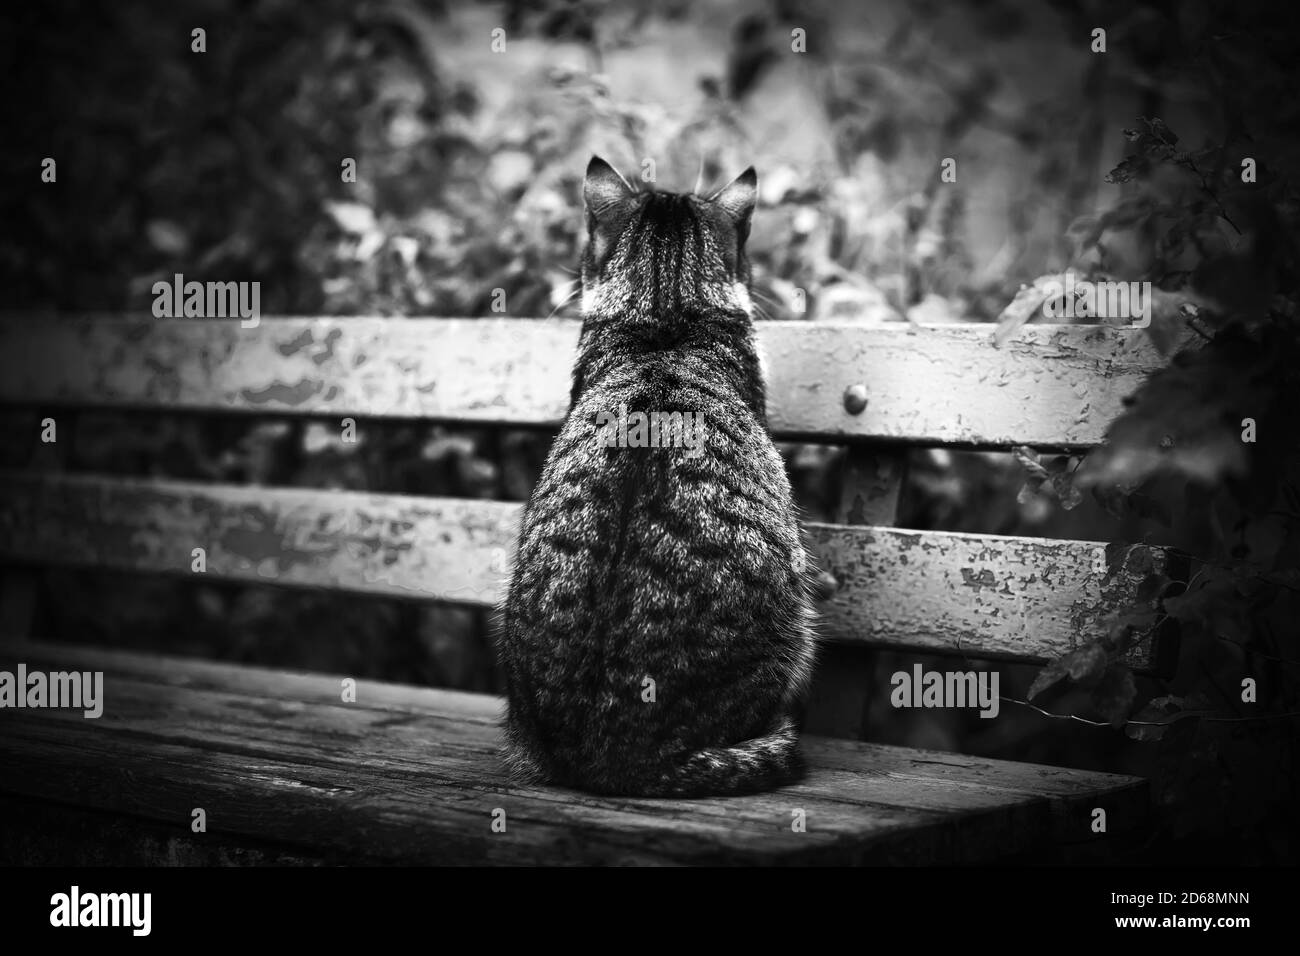 Image en noir et blanc d'un chat errant assis seul sur un vieux banc de bois battu au milieu du feuillage d'été. Banque D'Images